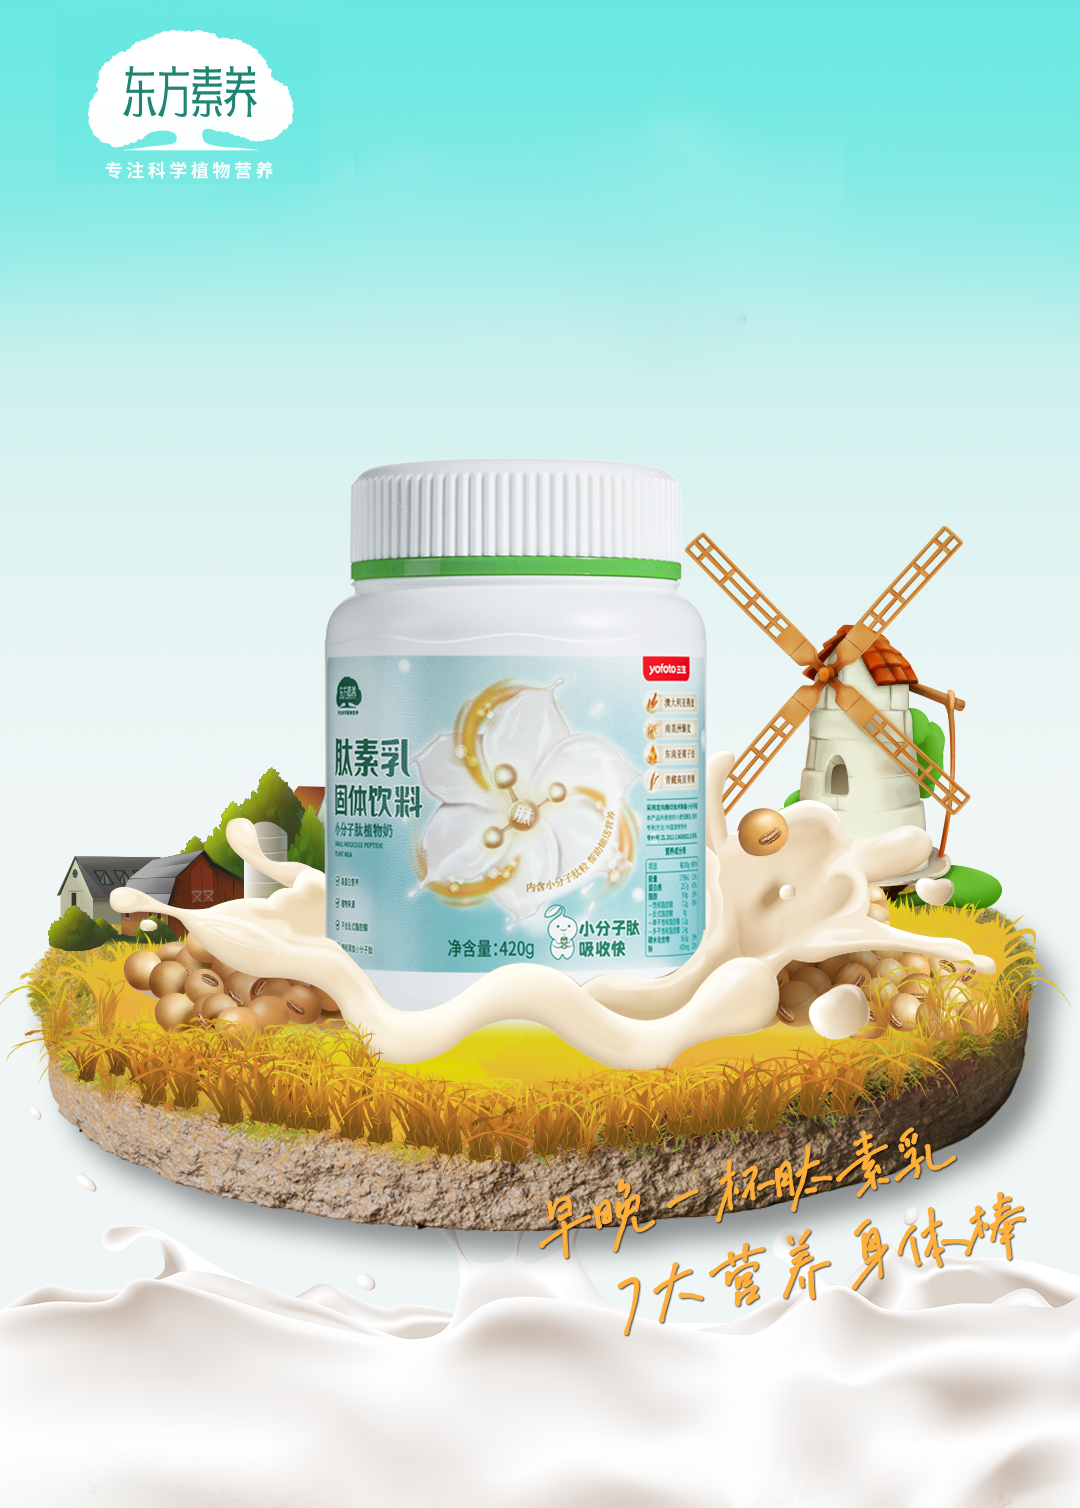 三生东方素养肽素乳 一罐植物奶的中国梦